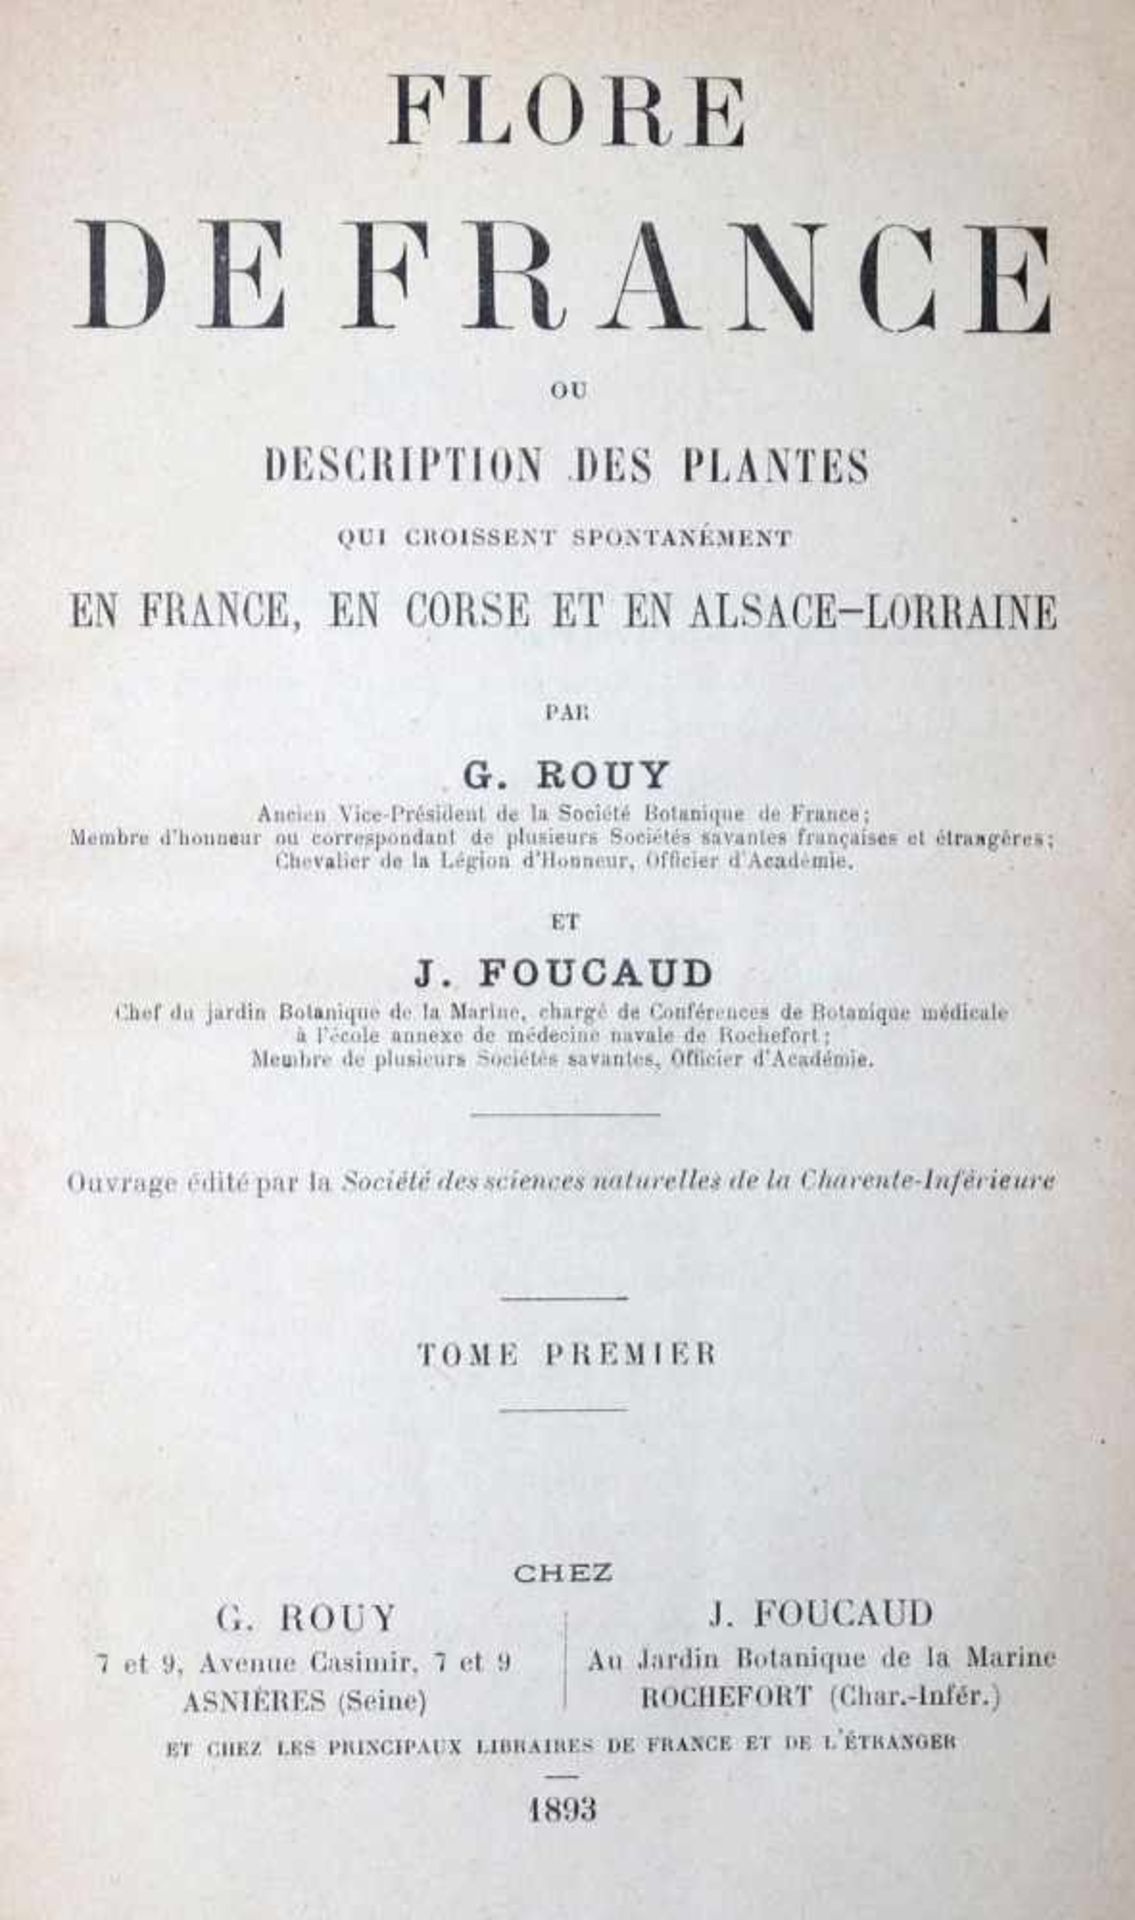 Rouy,G. u. J.Foucaud.